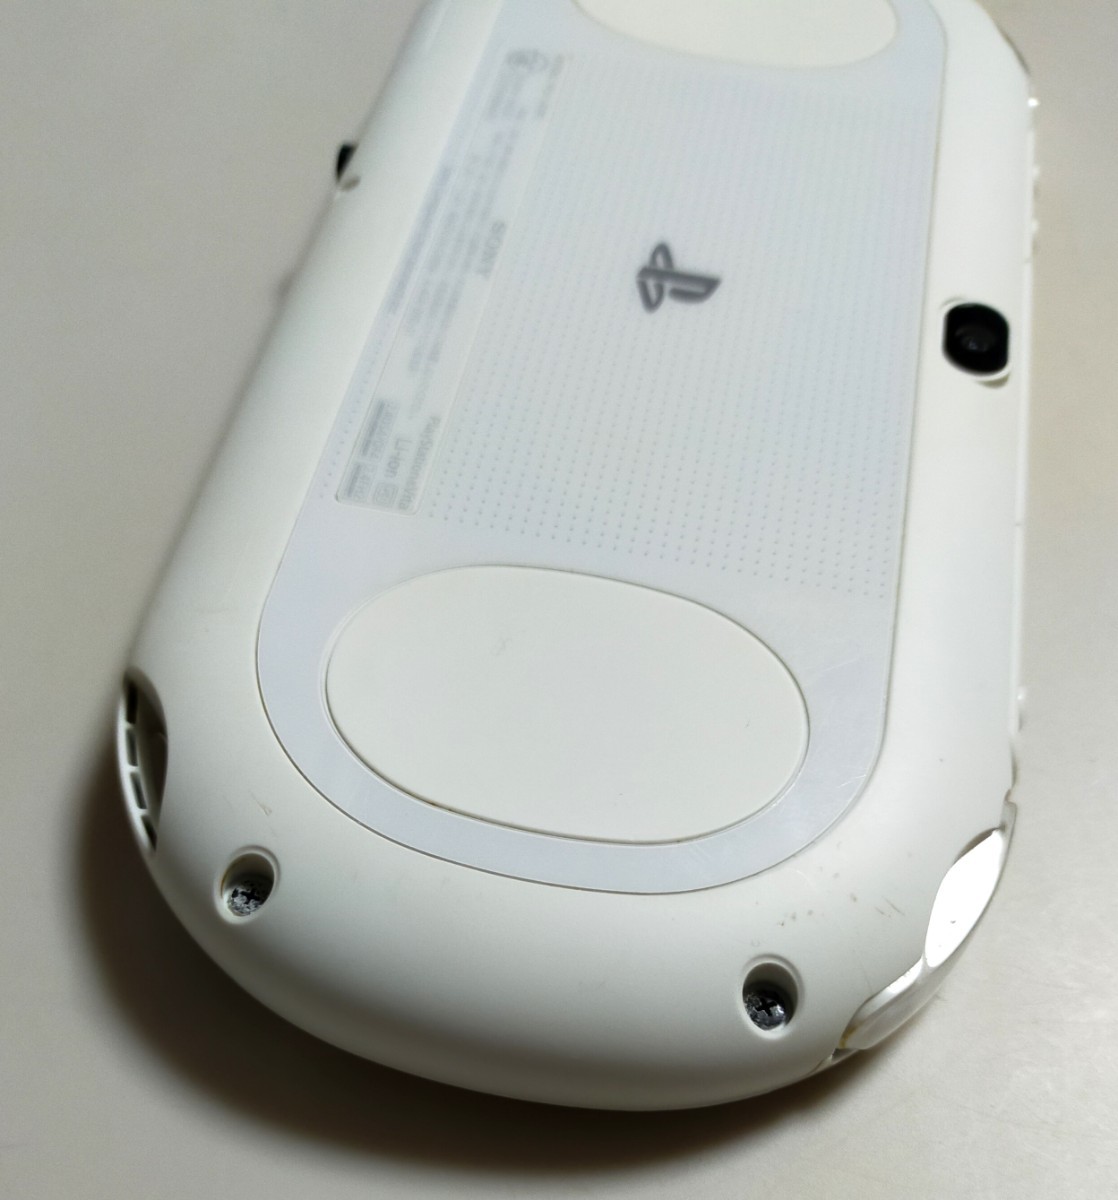 PSVita PCH-2000 本体 ホワイト＋メモリーカード16GB 動作確認済み